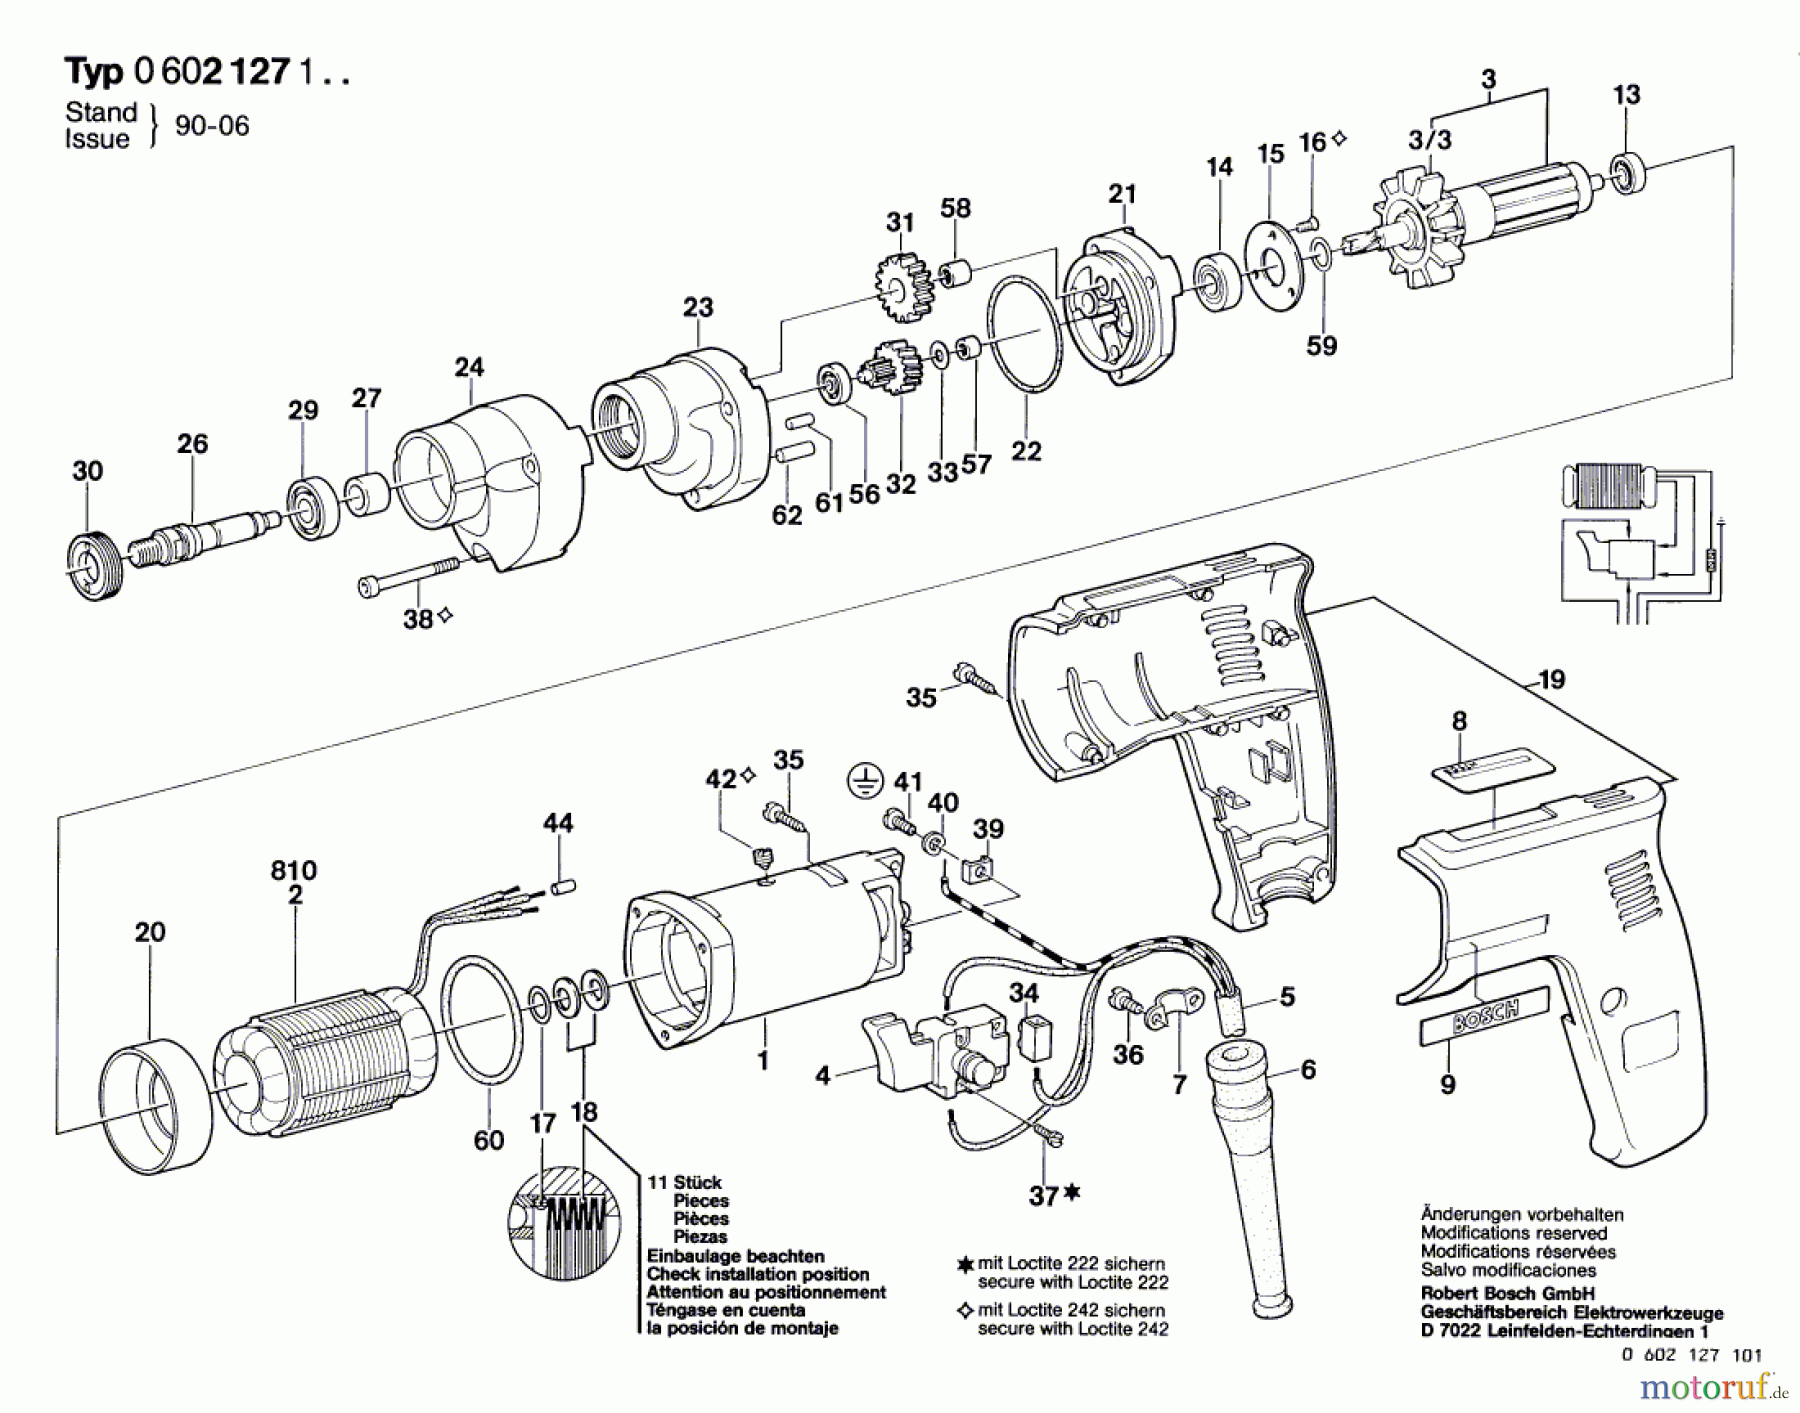  Bosch Werkzeug Hf-Bohrmaschine GR.57 Seite 1